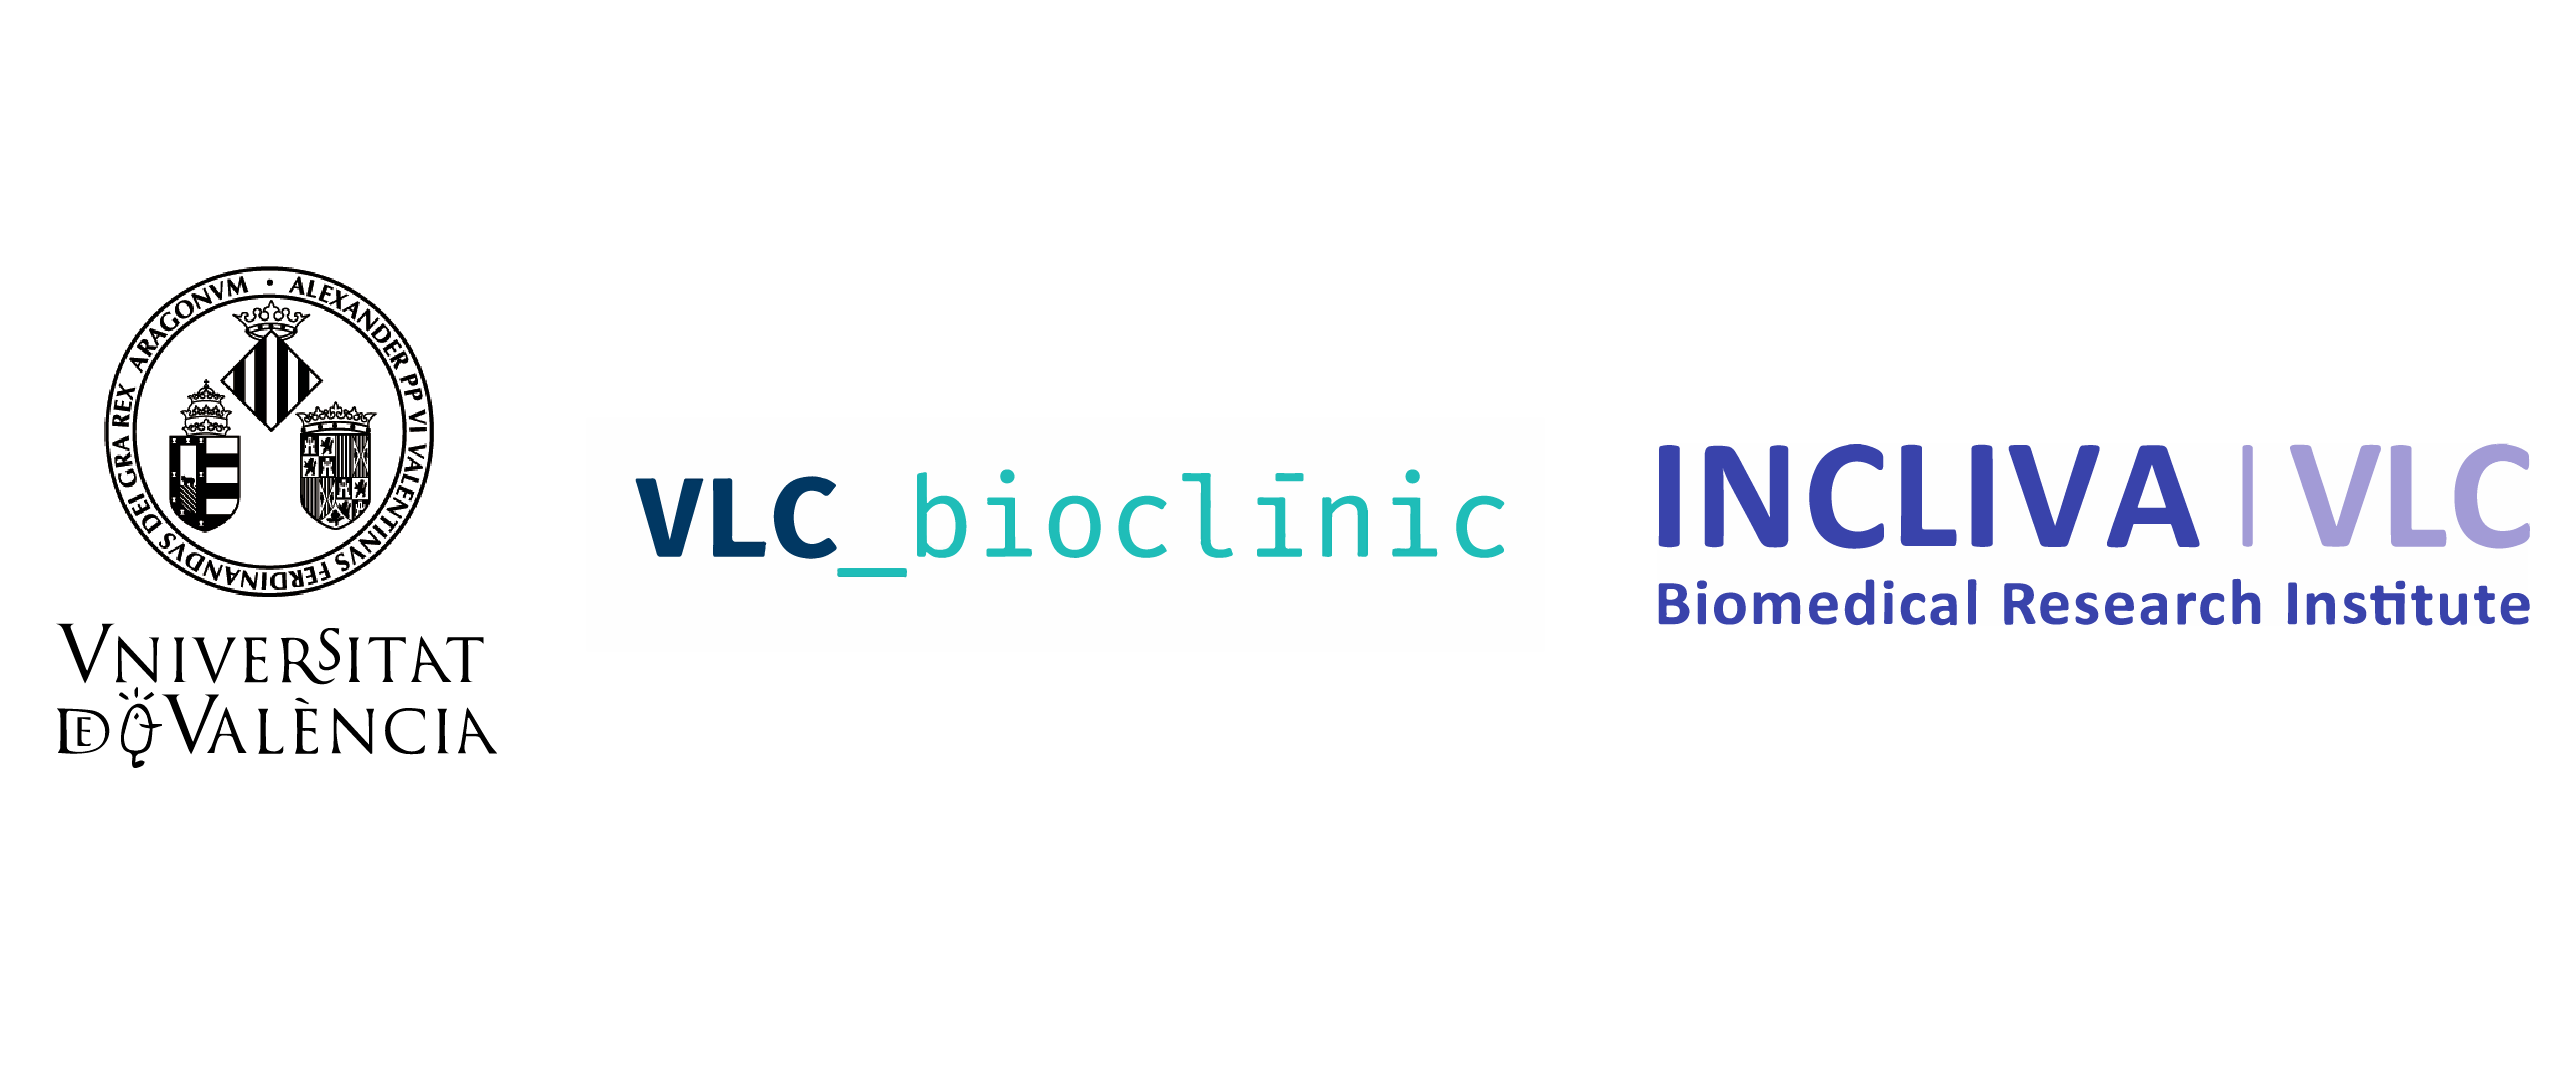 Universitat de València - Bioclínic - INCLIVA